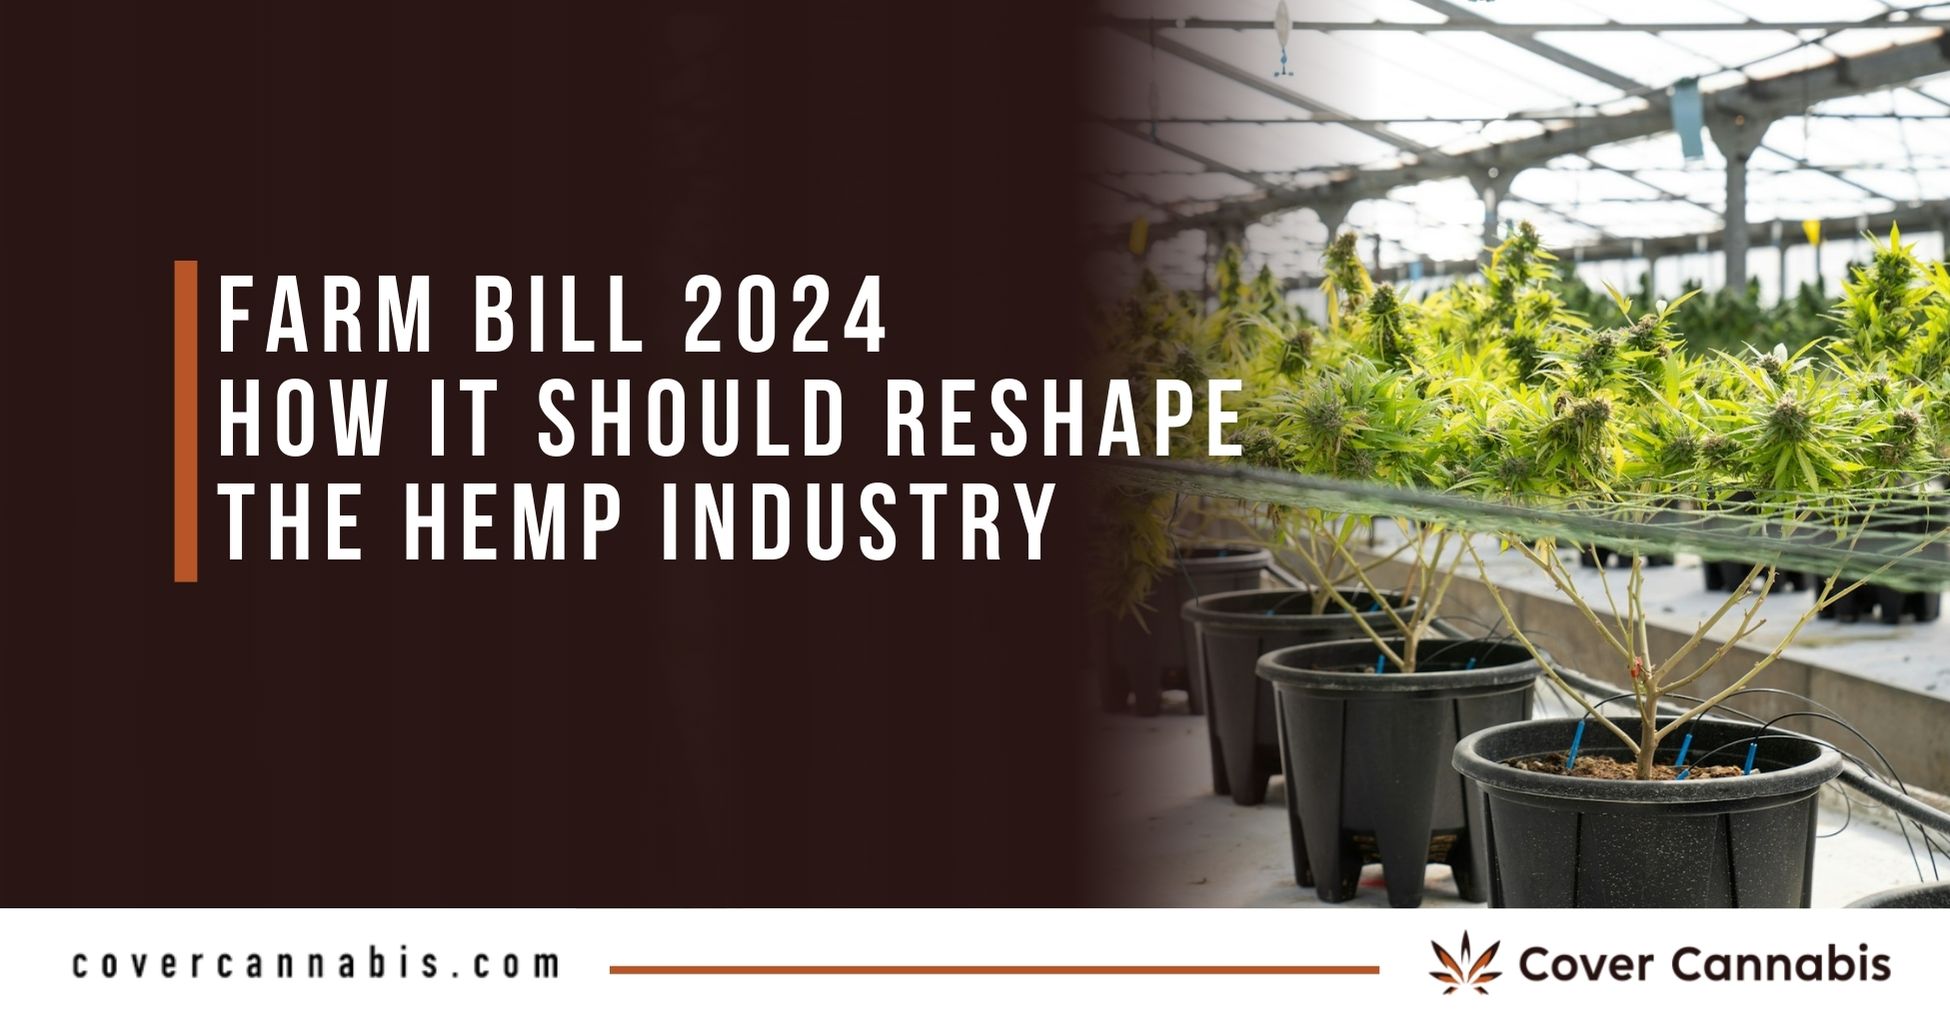 Farm Bill 2023 Updates for 2024